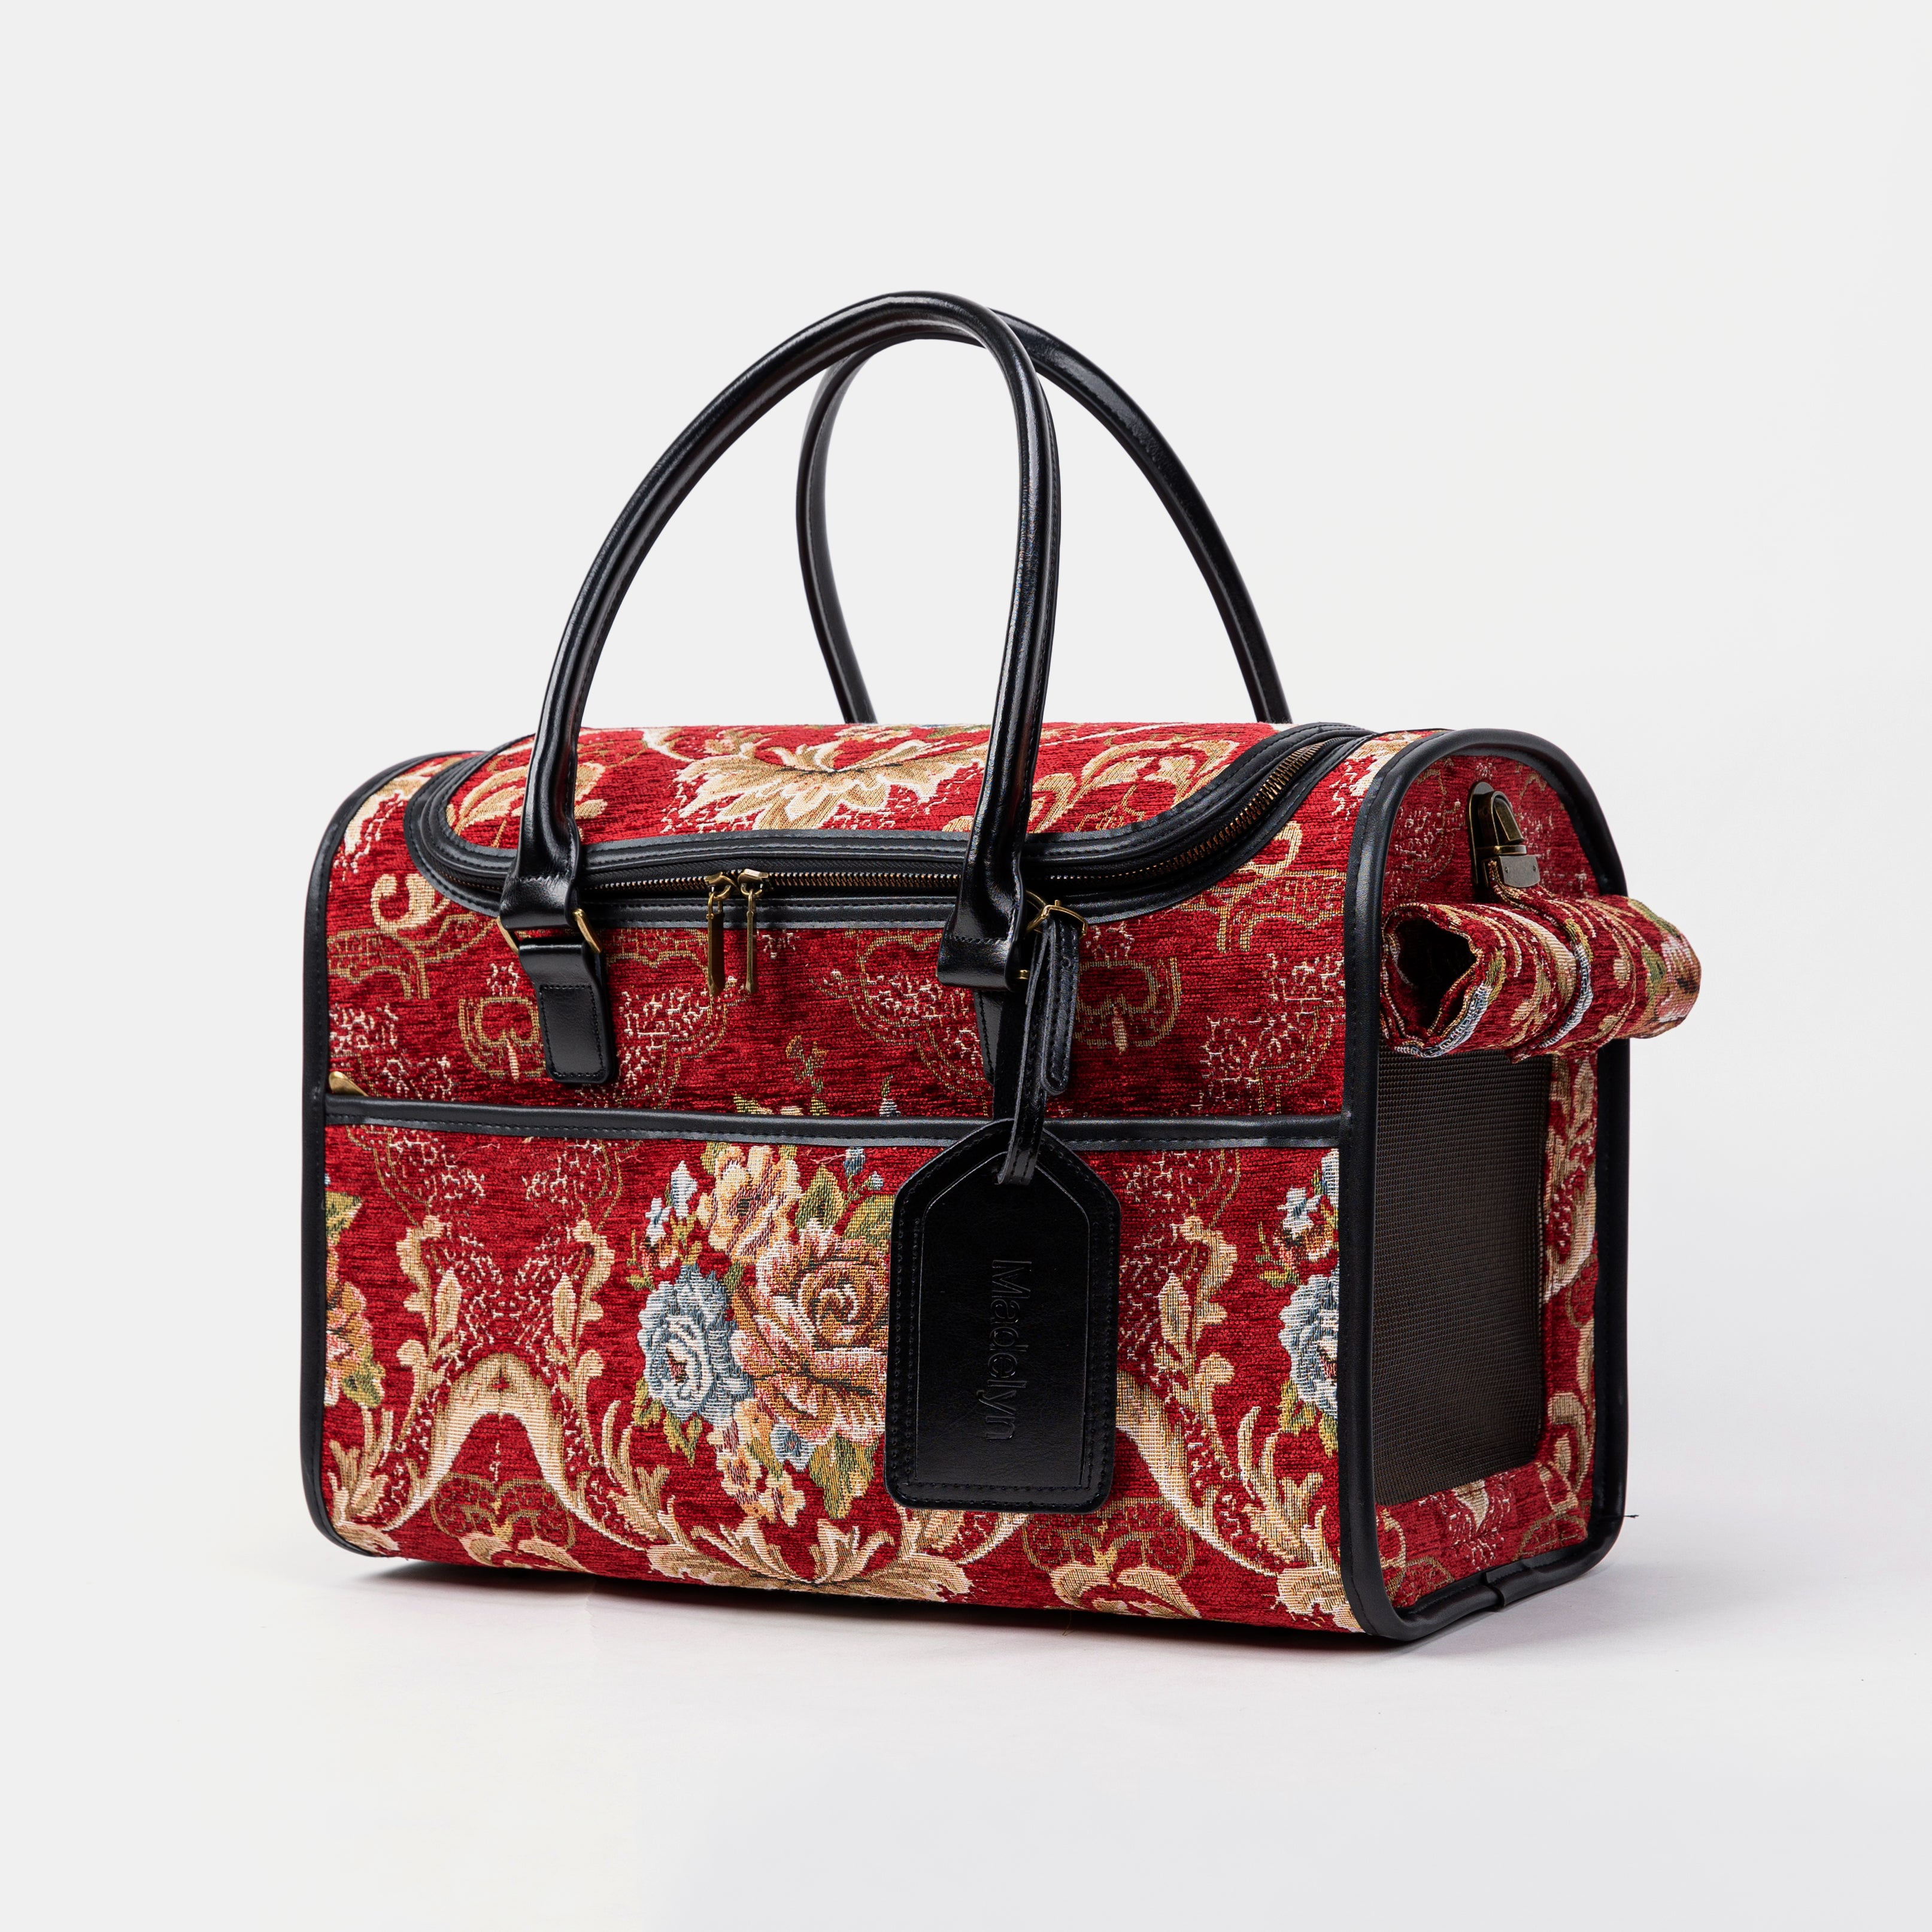 Travel Dog Carrier Bag Floral Red Main